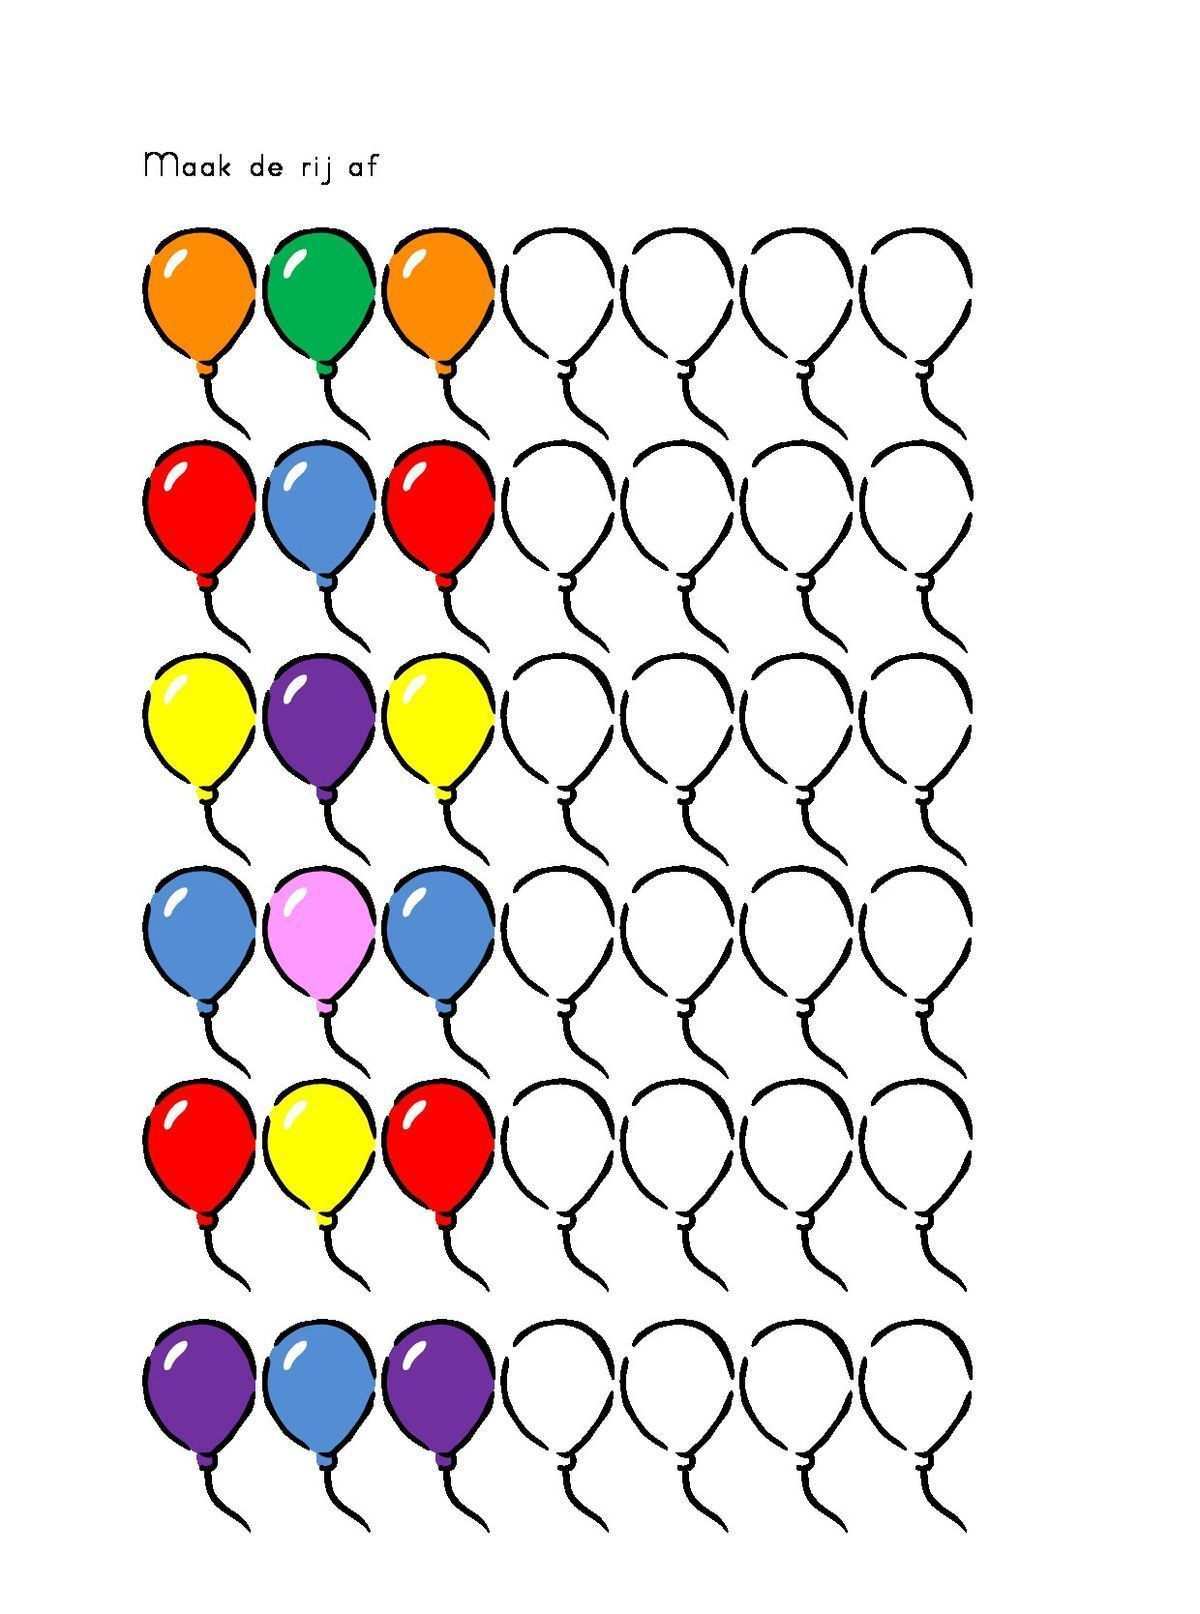 Vorschule Pattern Colors Preschool Recognize School Blog Colors Logische Reihen Vorschule In 2020 Vorschule Formen Vorschule Arbeitsblatt Fur Kinder Im Vorschulalter